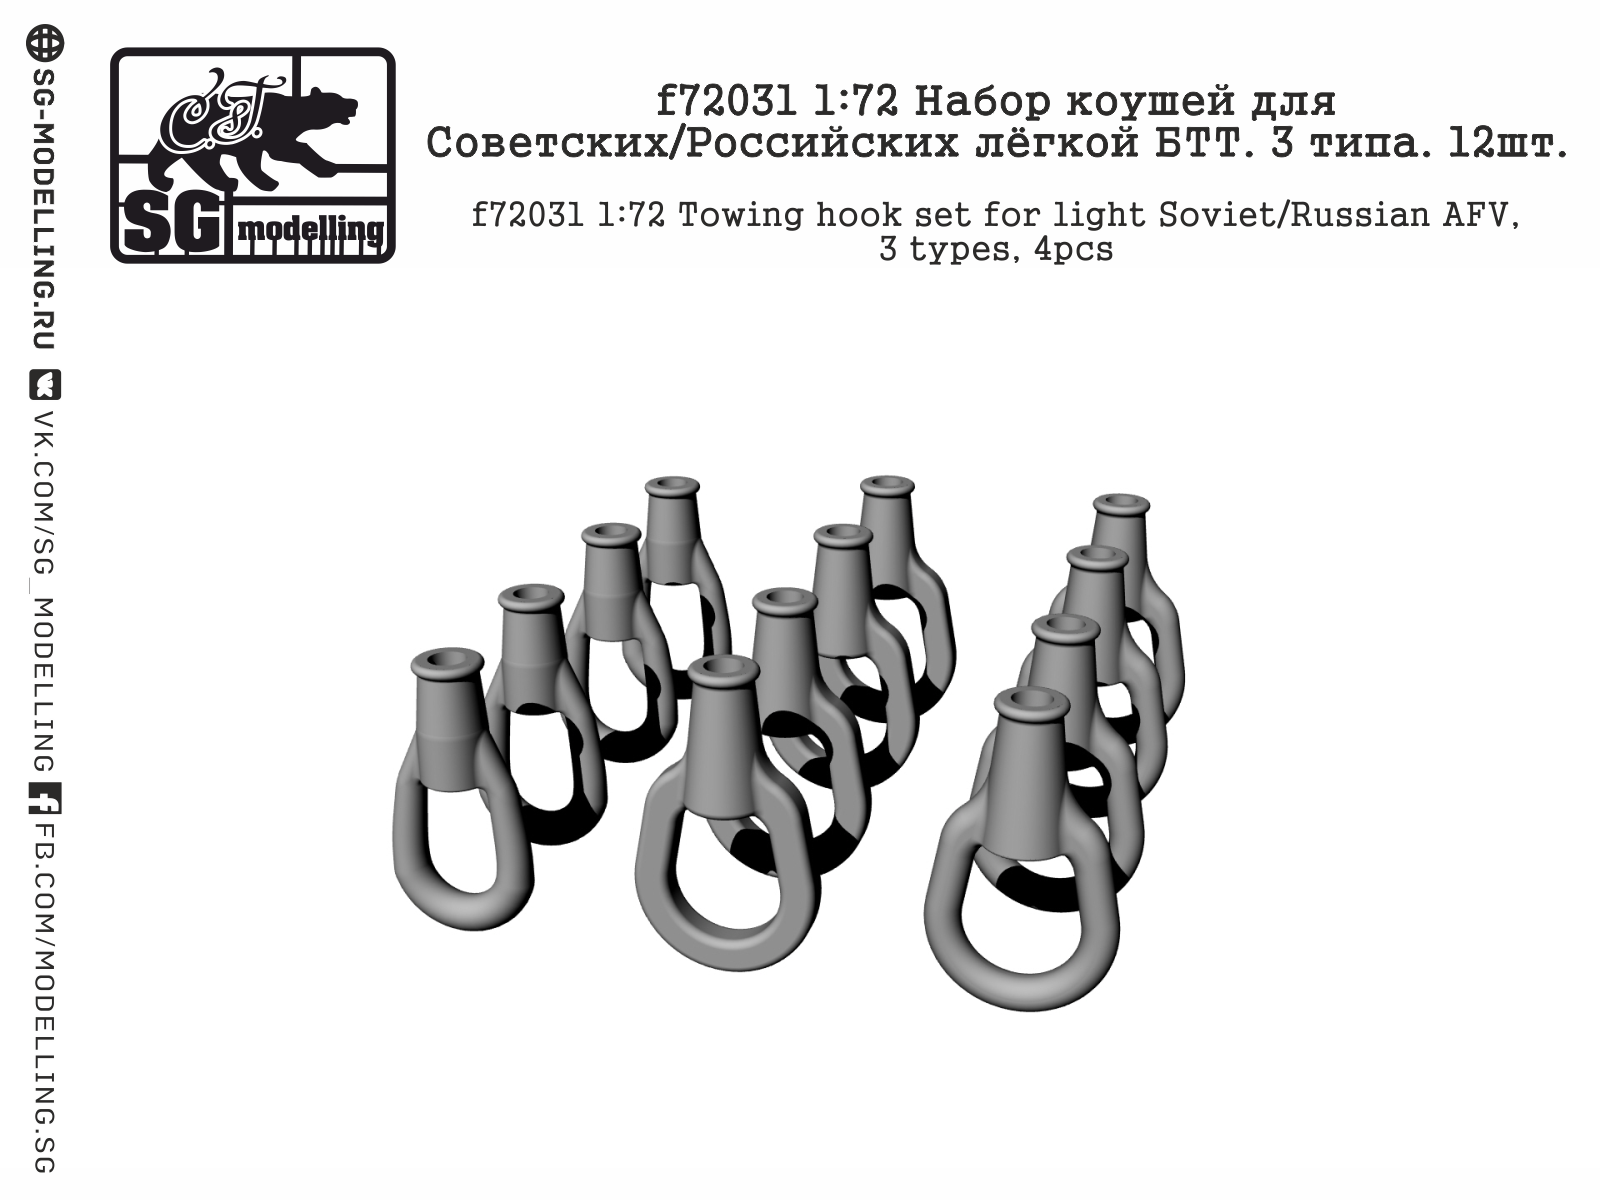 f72031  дополнения из смолы  Набор коушей для Советских/Российских лёгкой БТТ. 3 типа. 12шт  (1:72)